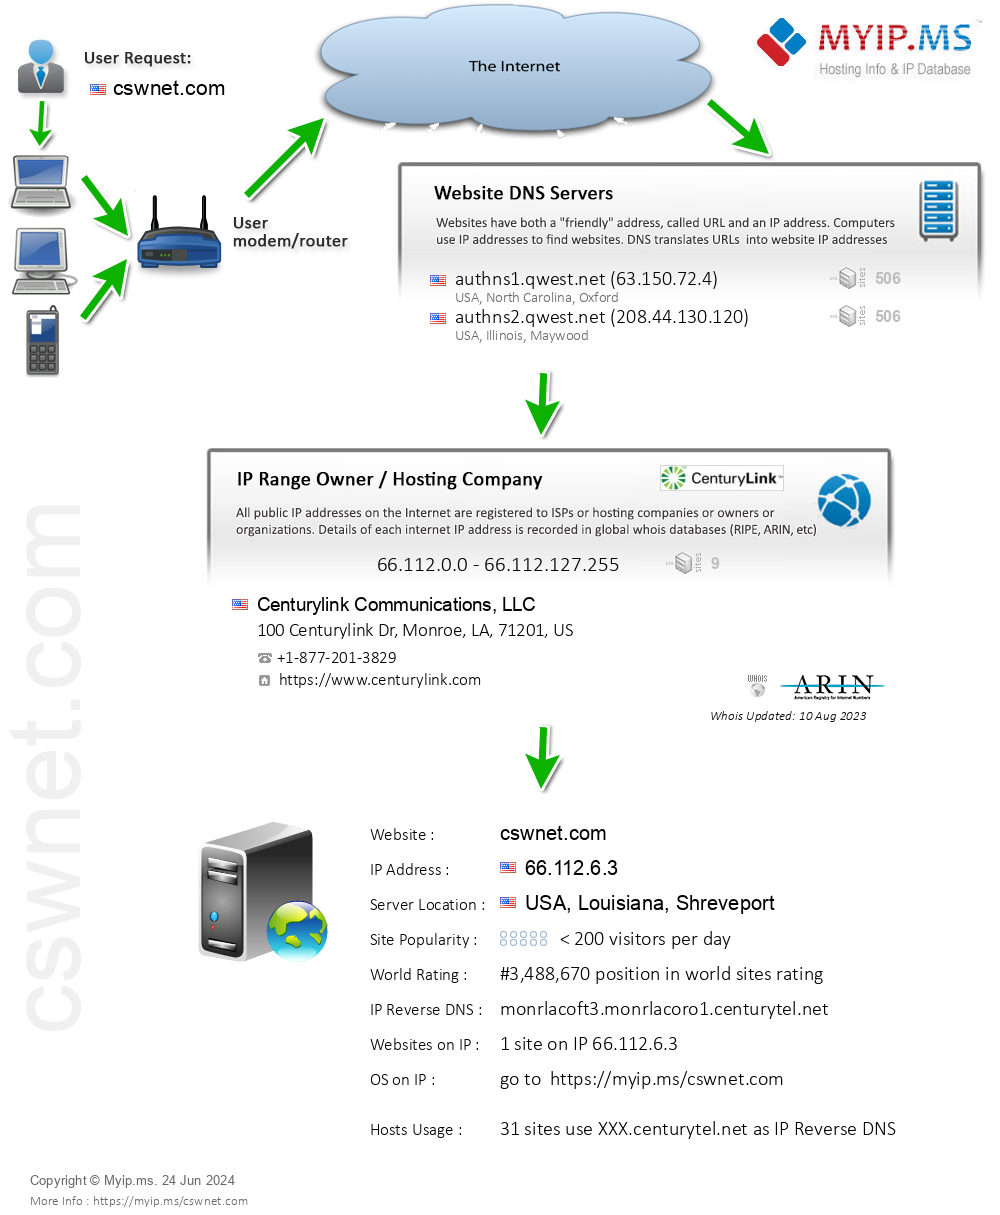 Cswnet.com - Website Hosting Visual IP Diagram